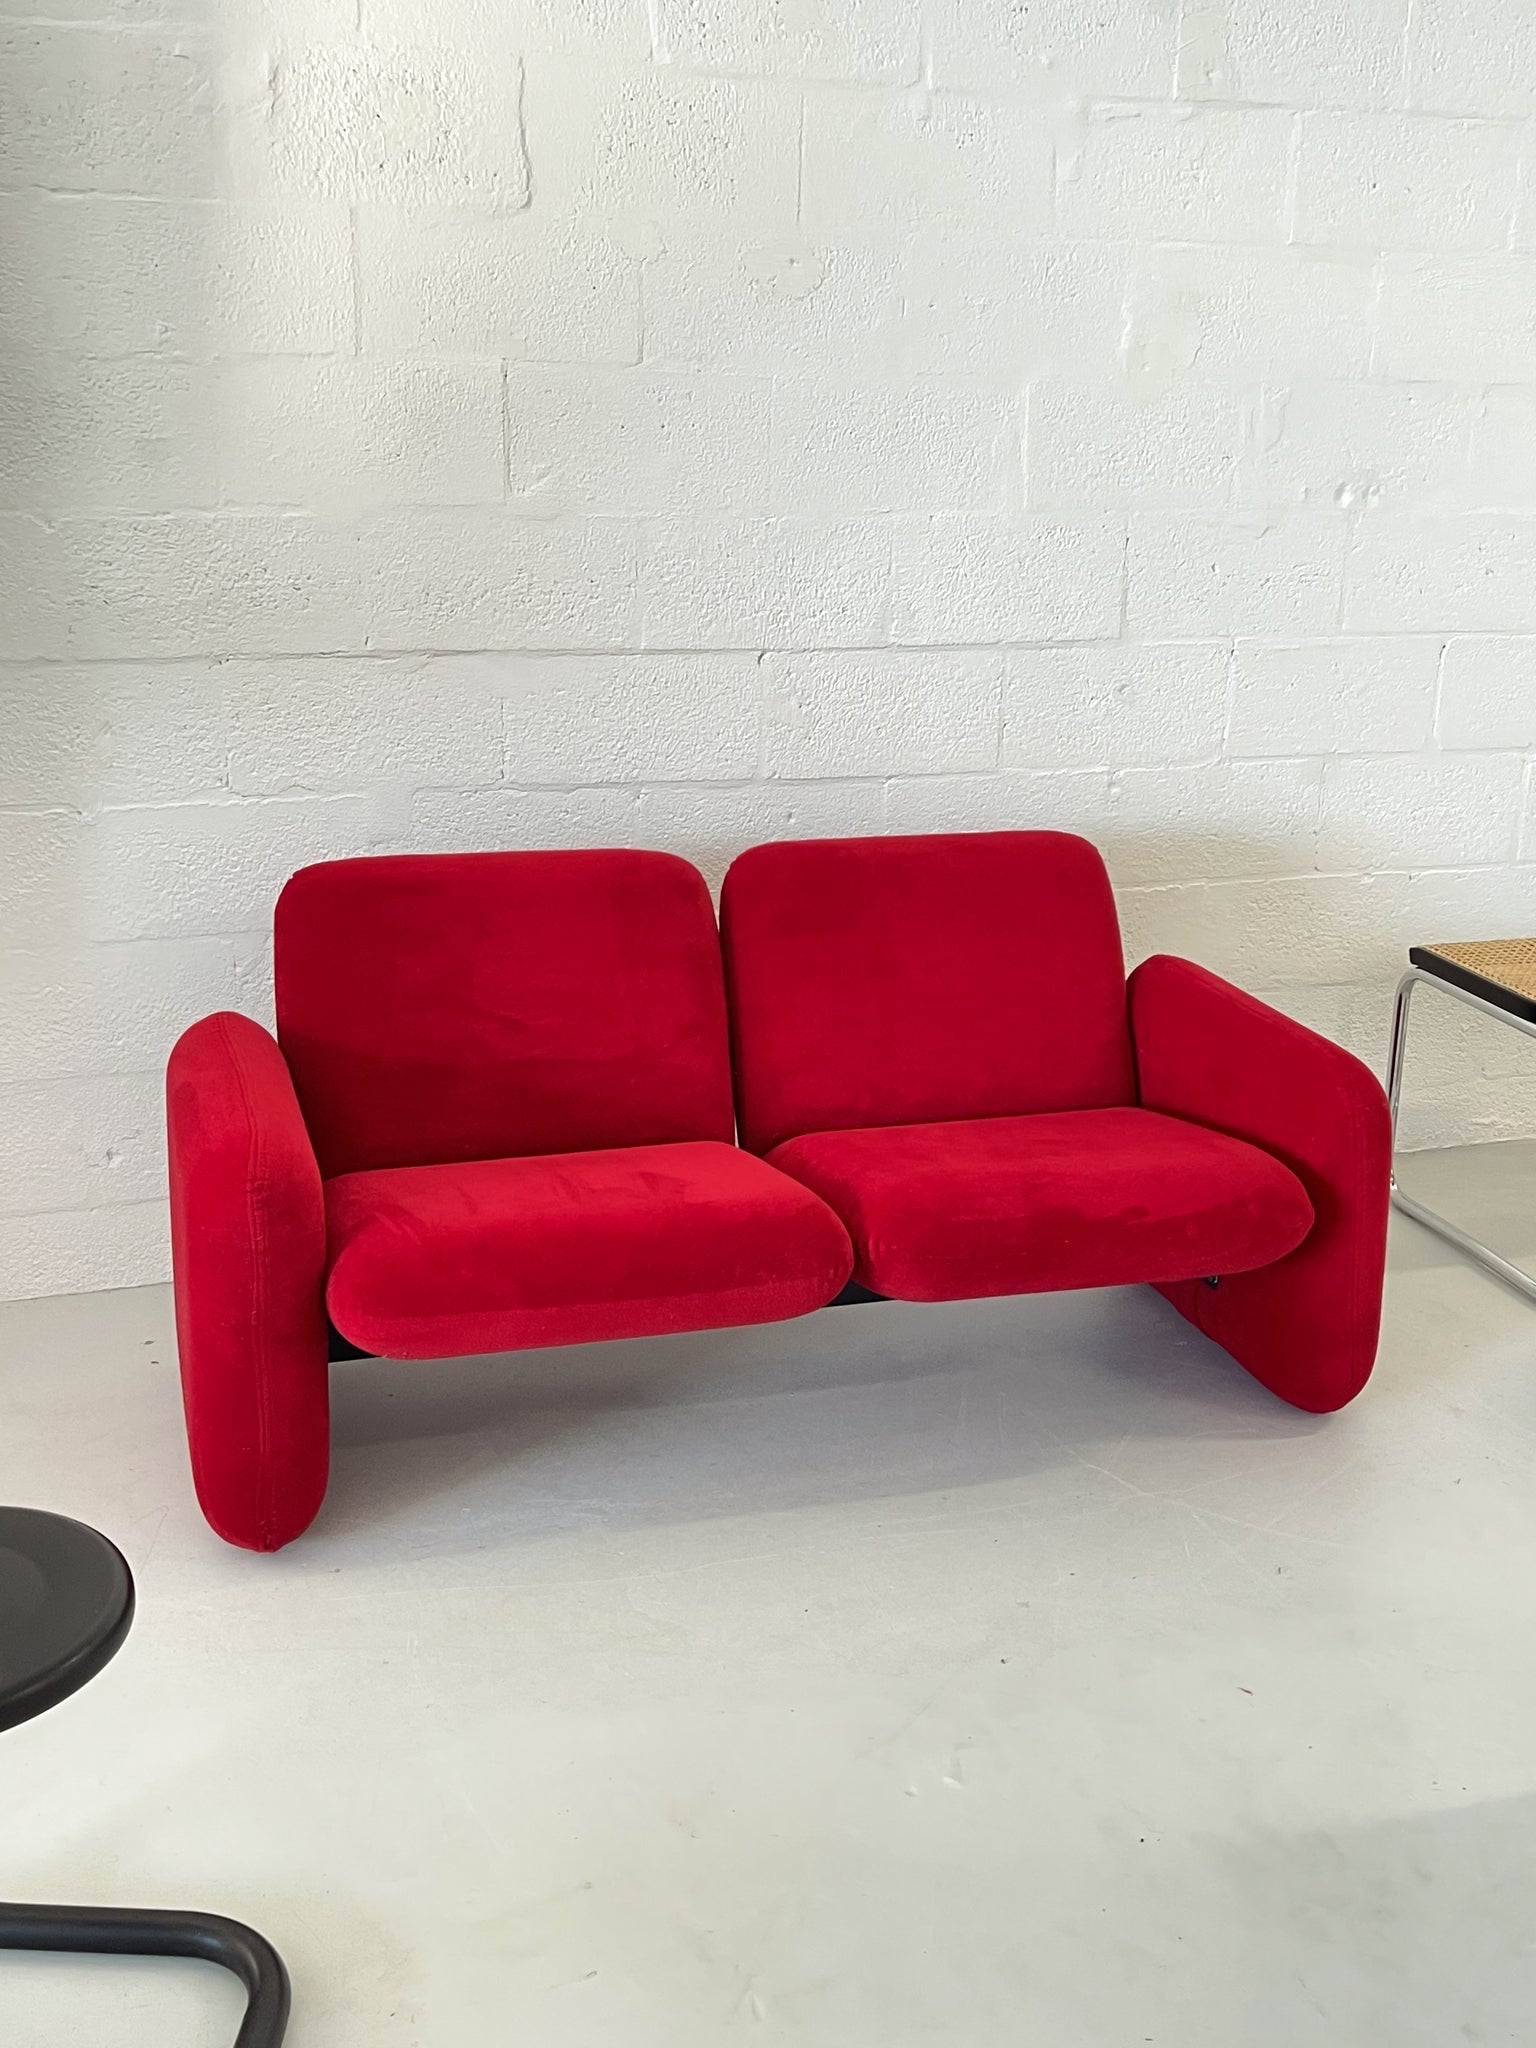 2-Seater Chiclet Sofa by Ray Wilkes for Herman Miller in Red Velvet